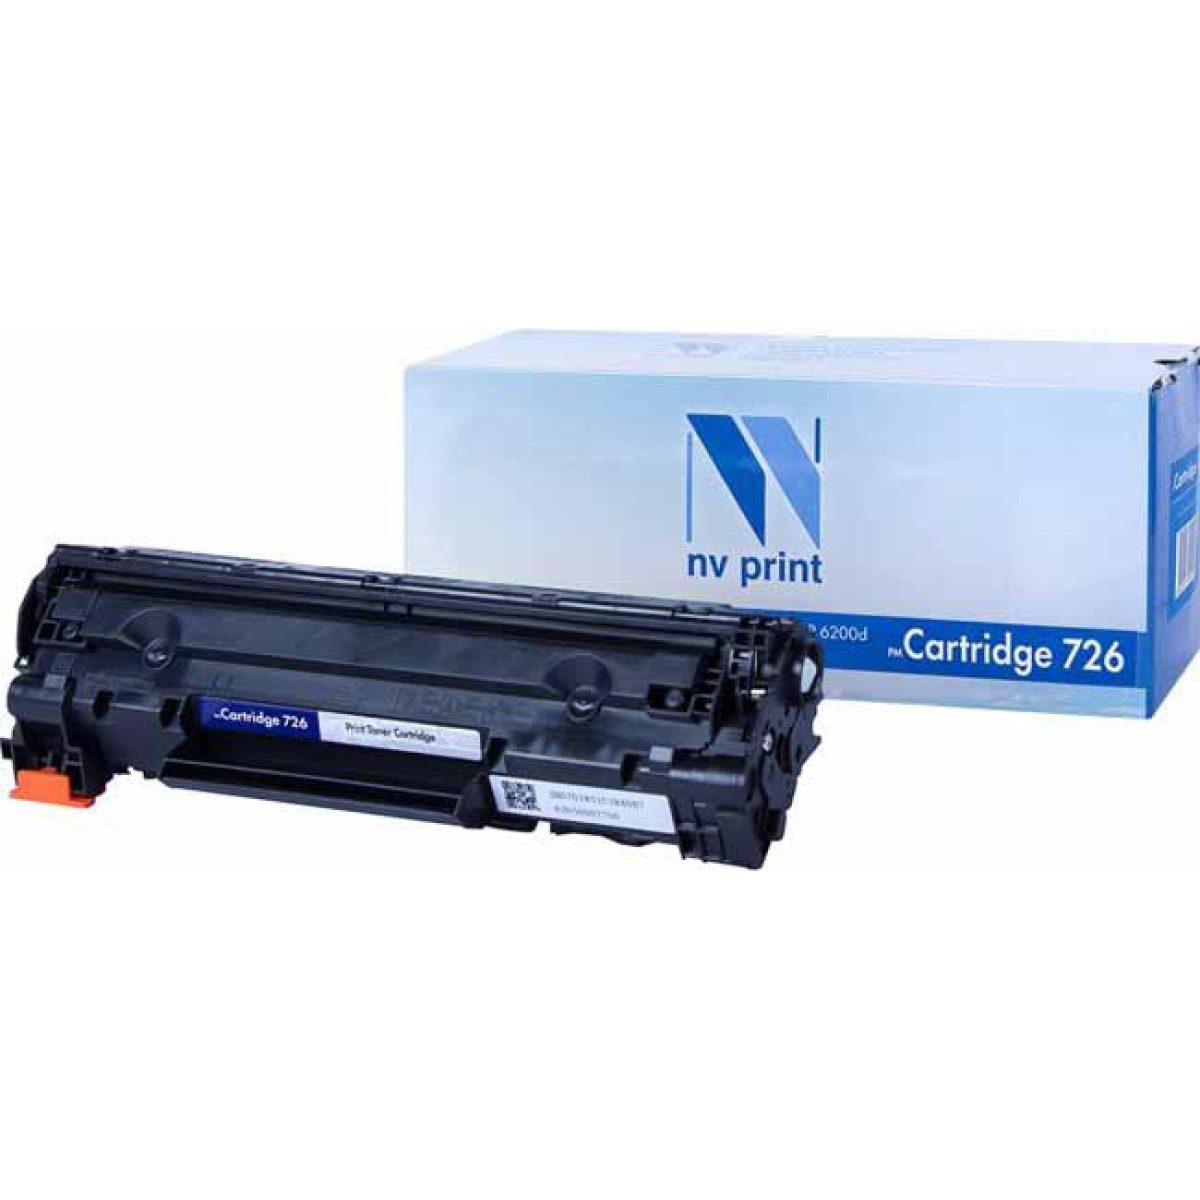 Купить картридж NV Print Cartridge 726 черный по адекватной цене — Digit-Mall